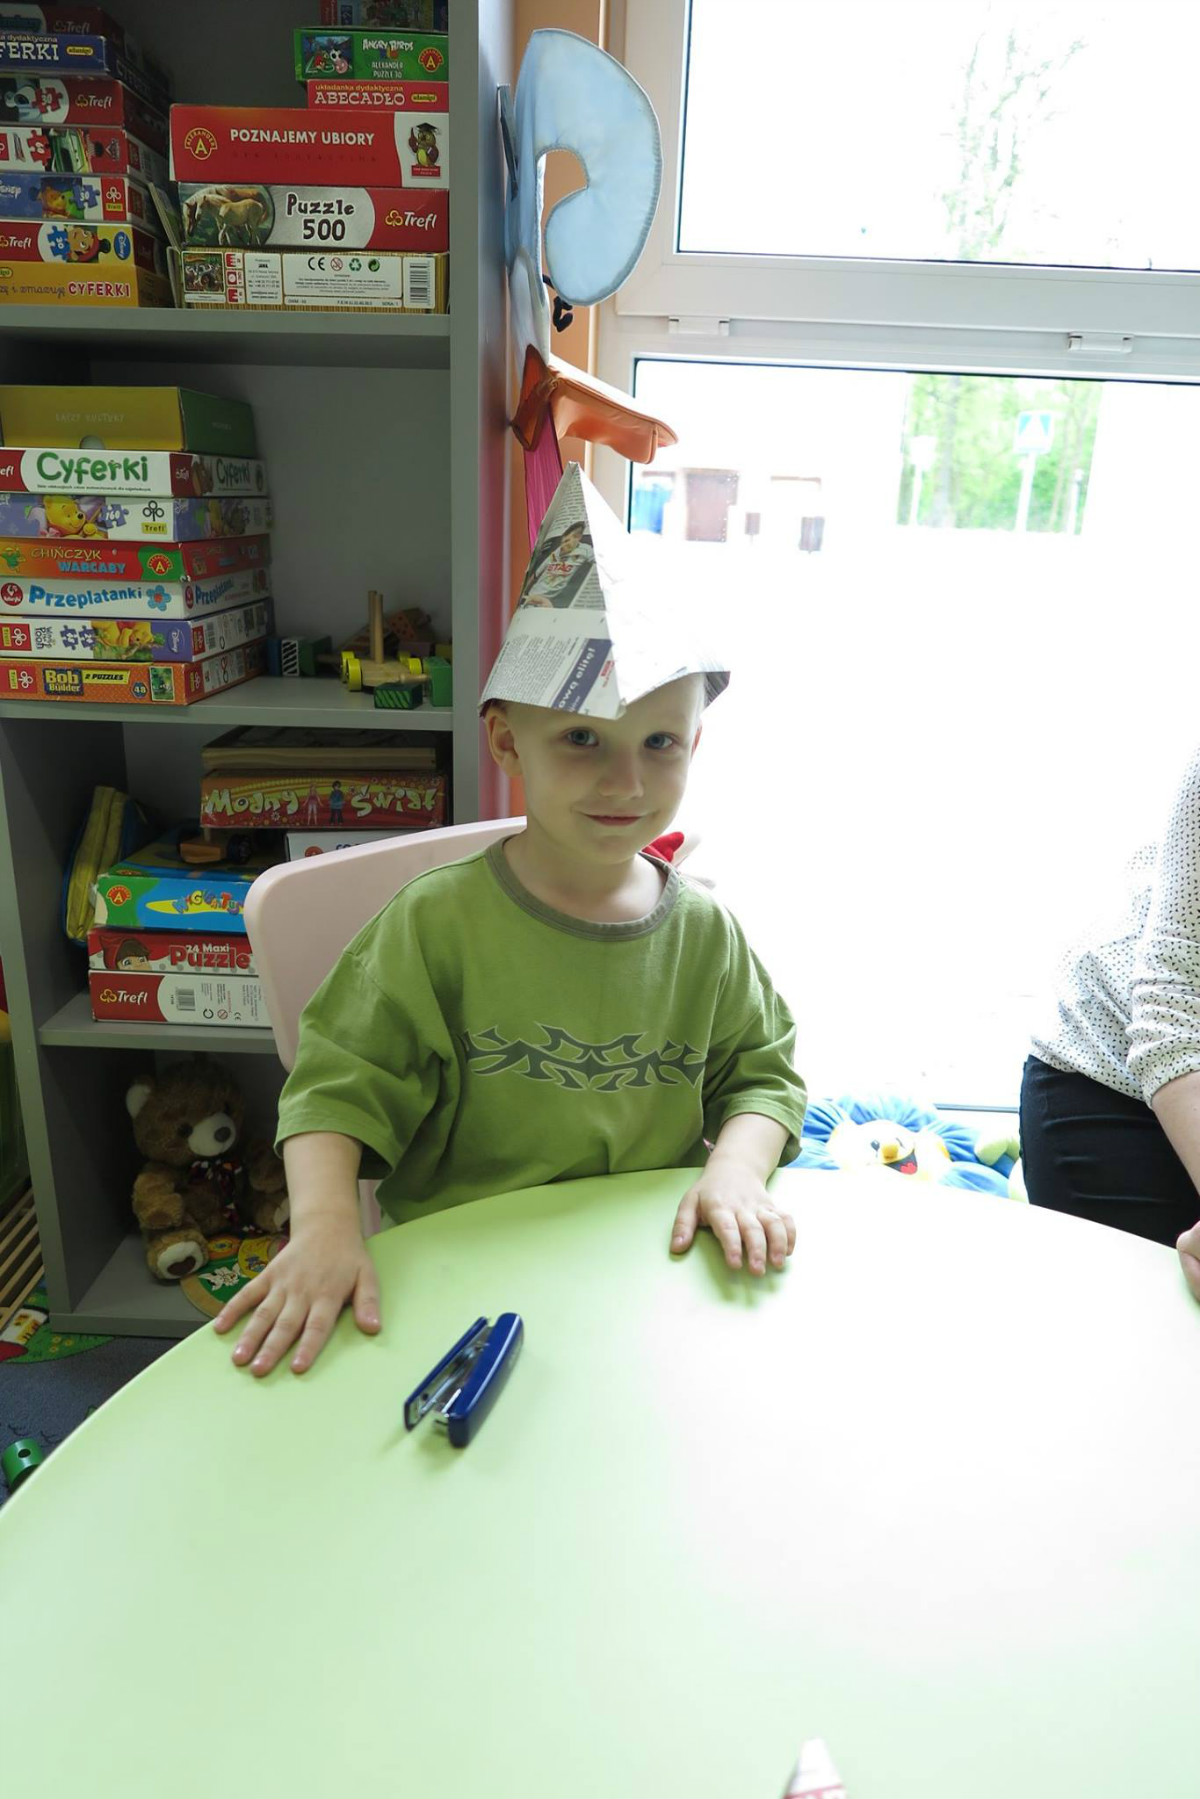 Przy stoliku siedzi chłopiec z papierową czapką na głowie.